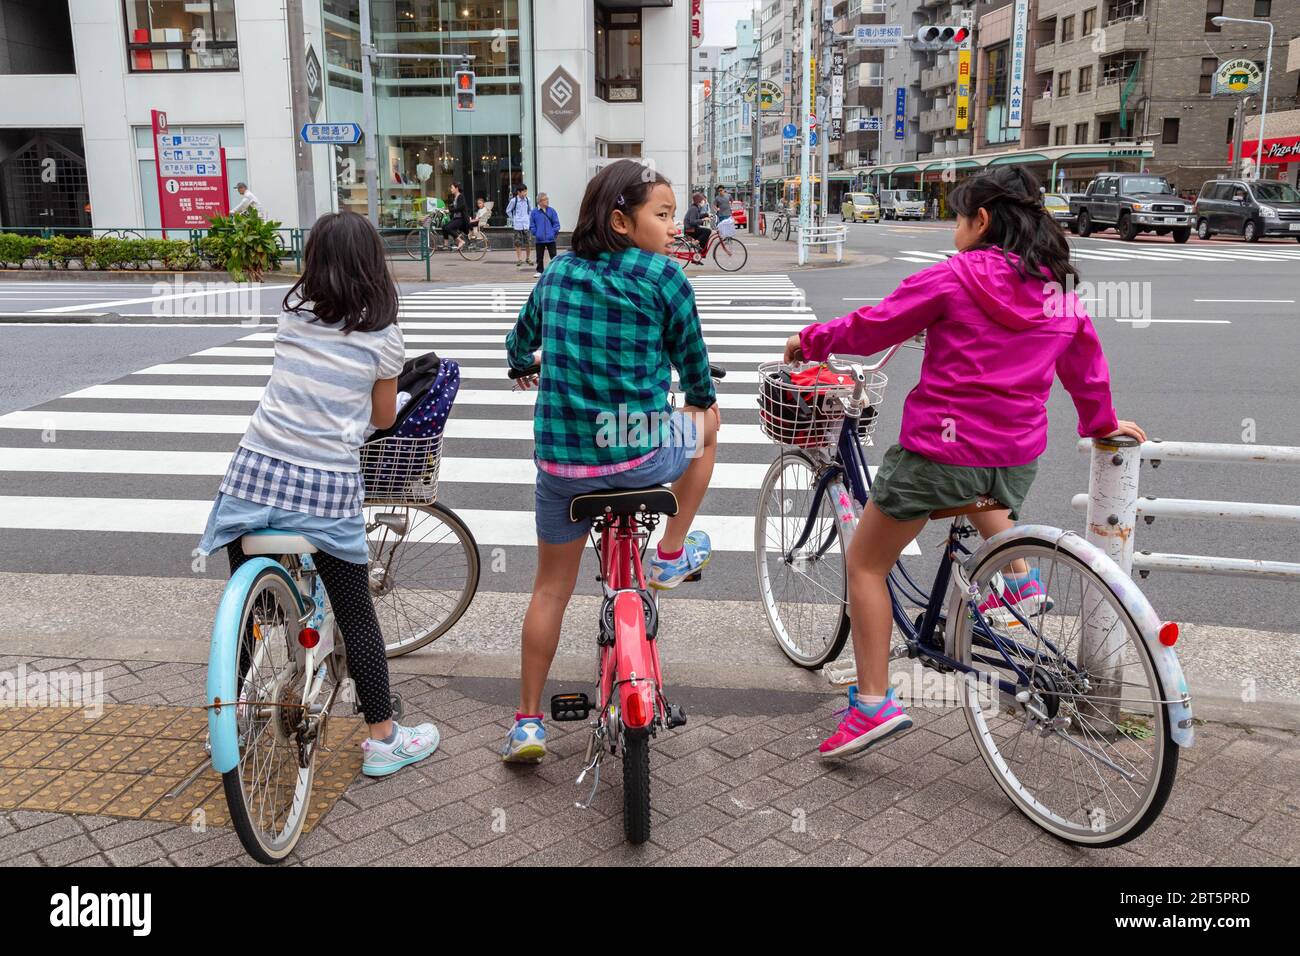 Tokio, Japan - 20. April 2020: Drei Kinder mit Freundinnen aus Japan fahren Fahrrad und halten vor der Überquerung an der Ampel am Fußgängerüberweg Stockfoto